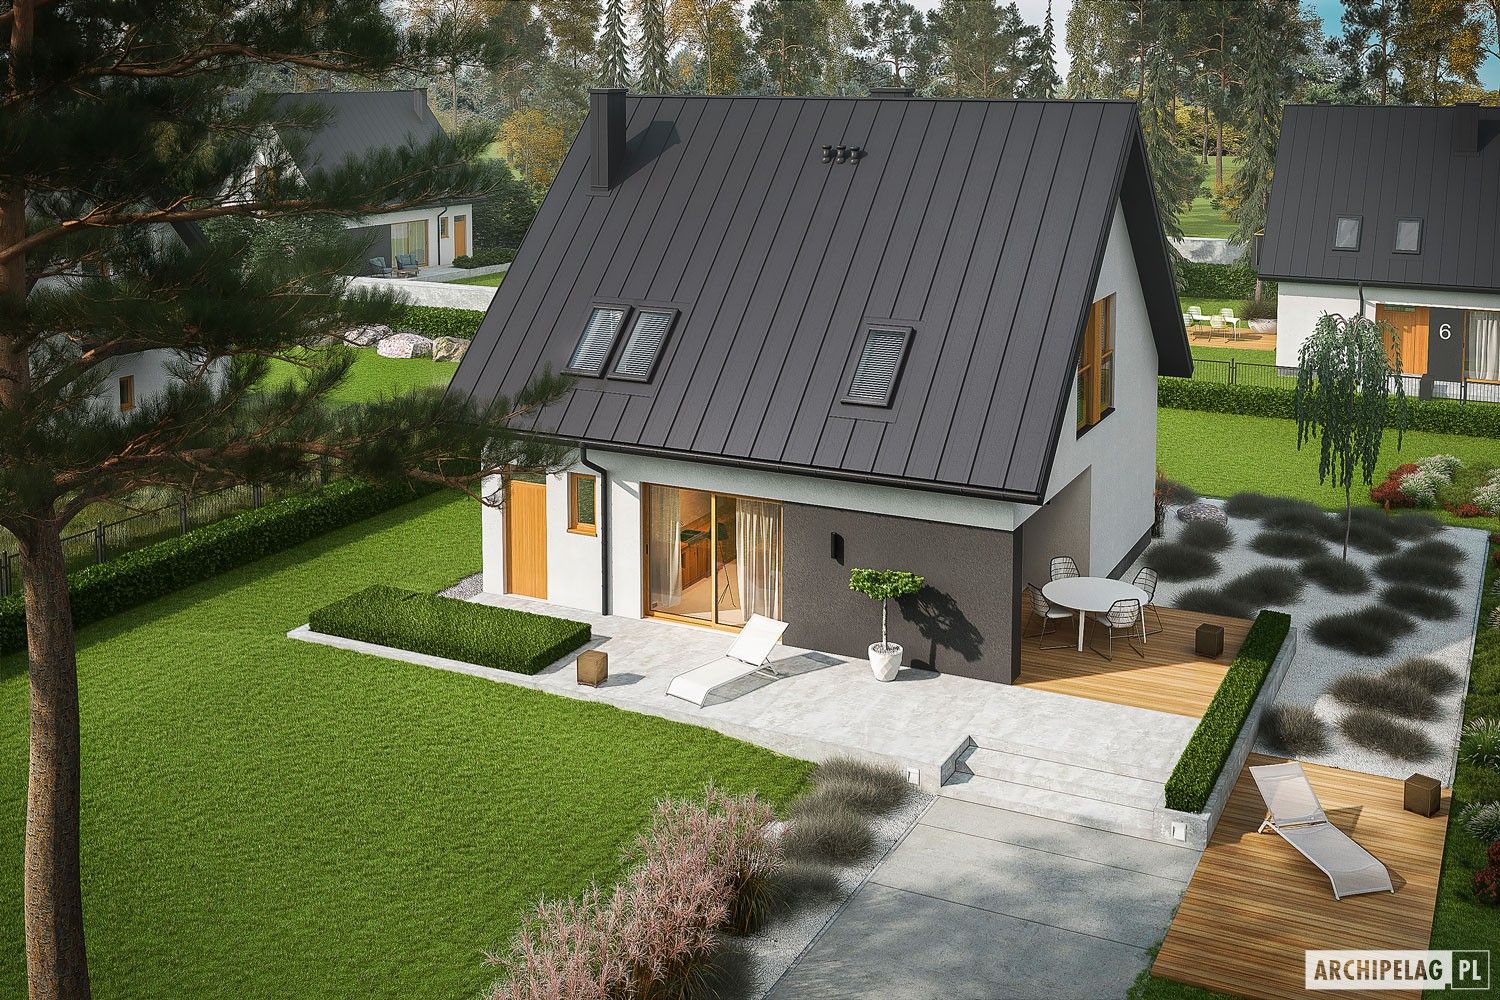 Projekt domu Mini 5 - mały, kompaktowy, na wąską działkę , Pracownia Projektowa ARCHIPELAG Pracownia Projektowa ARCHIPELAG Single family home